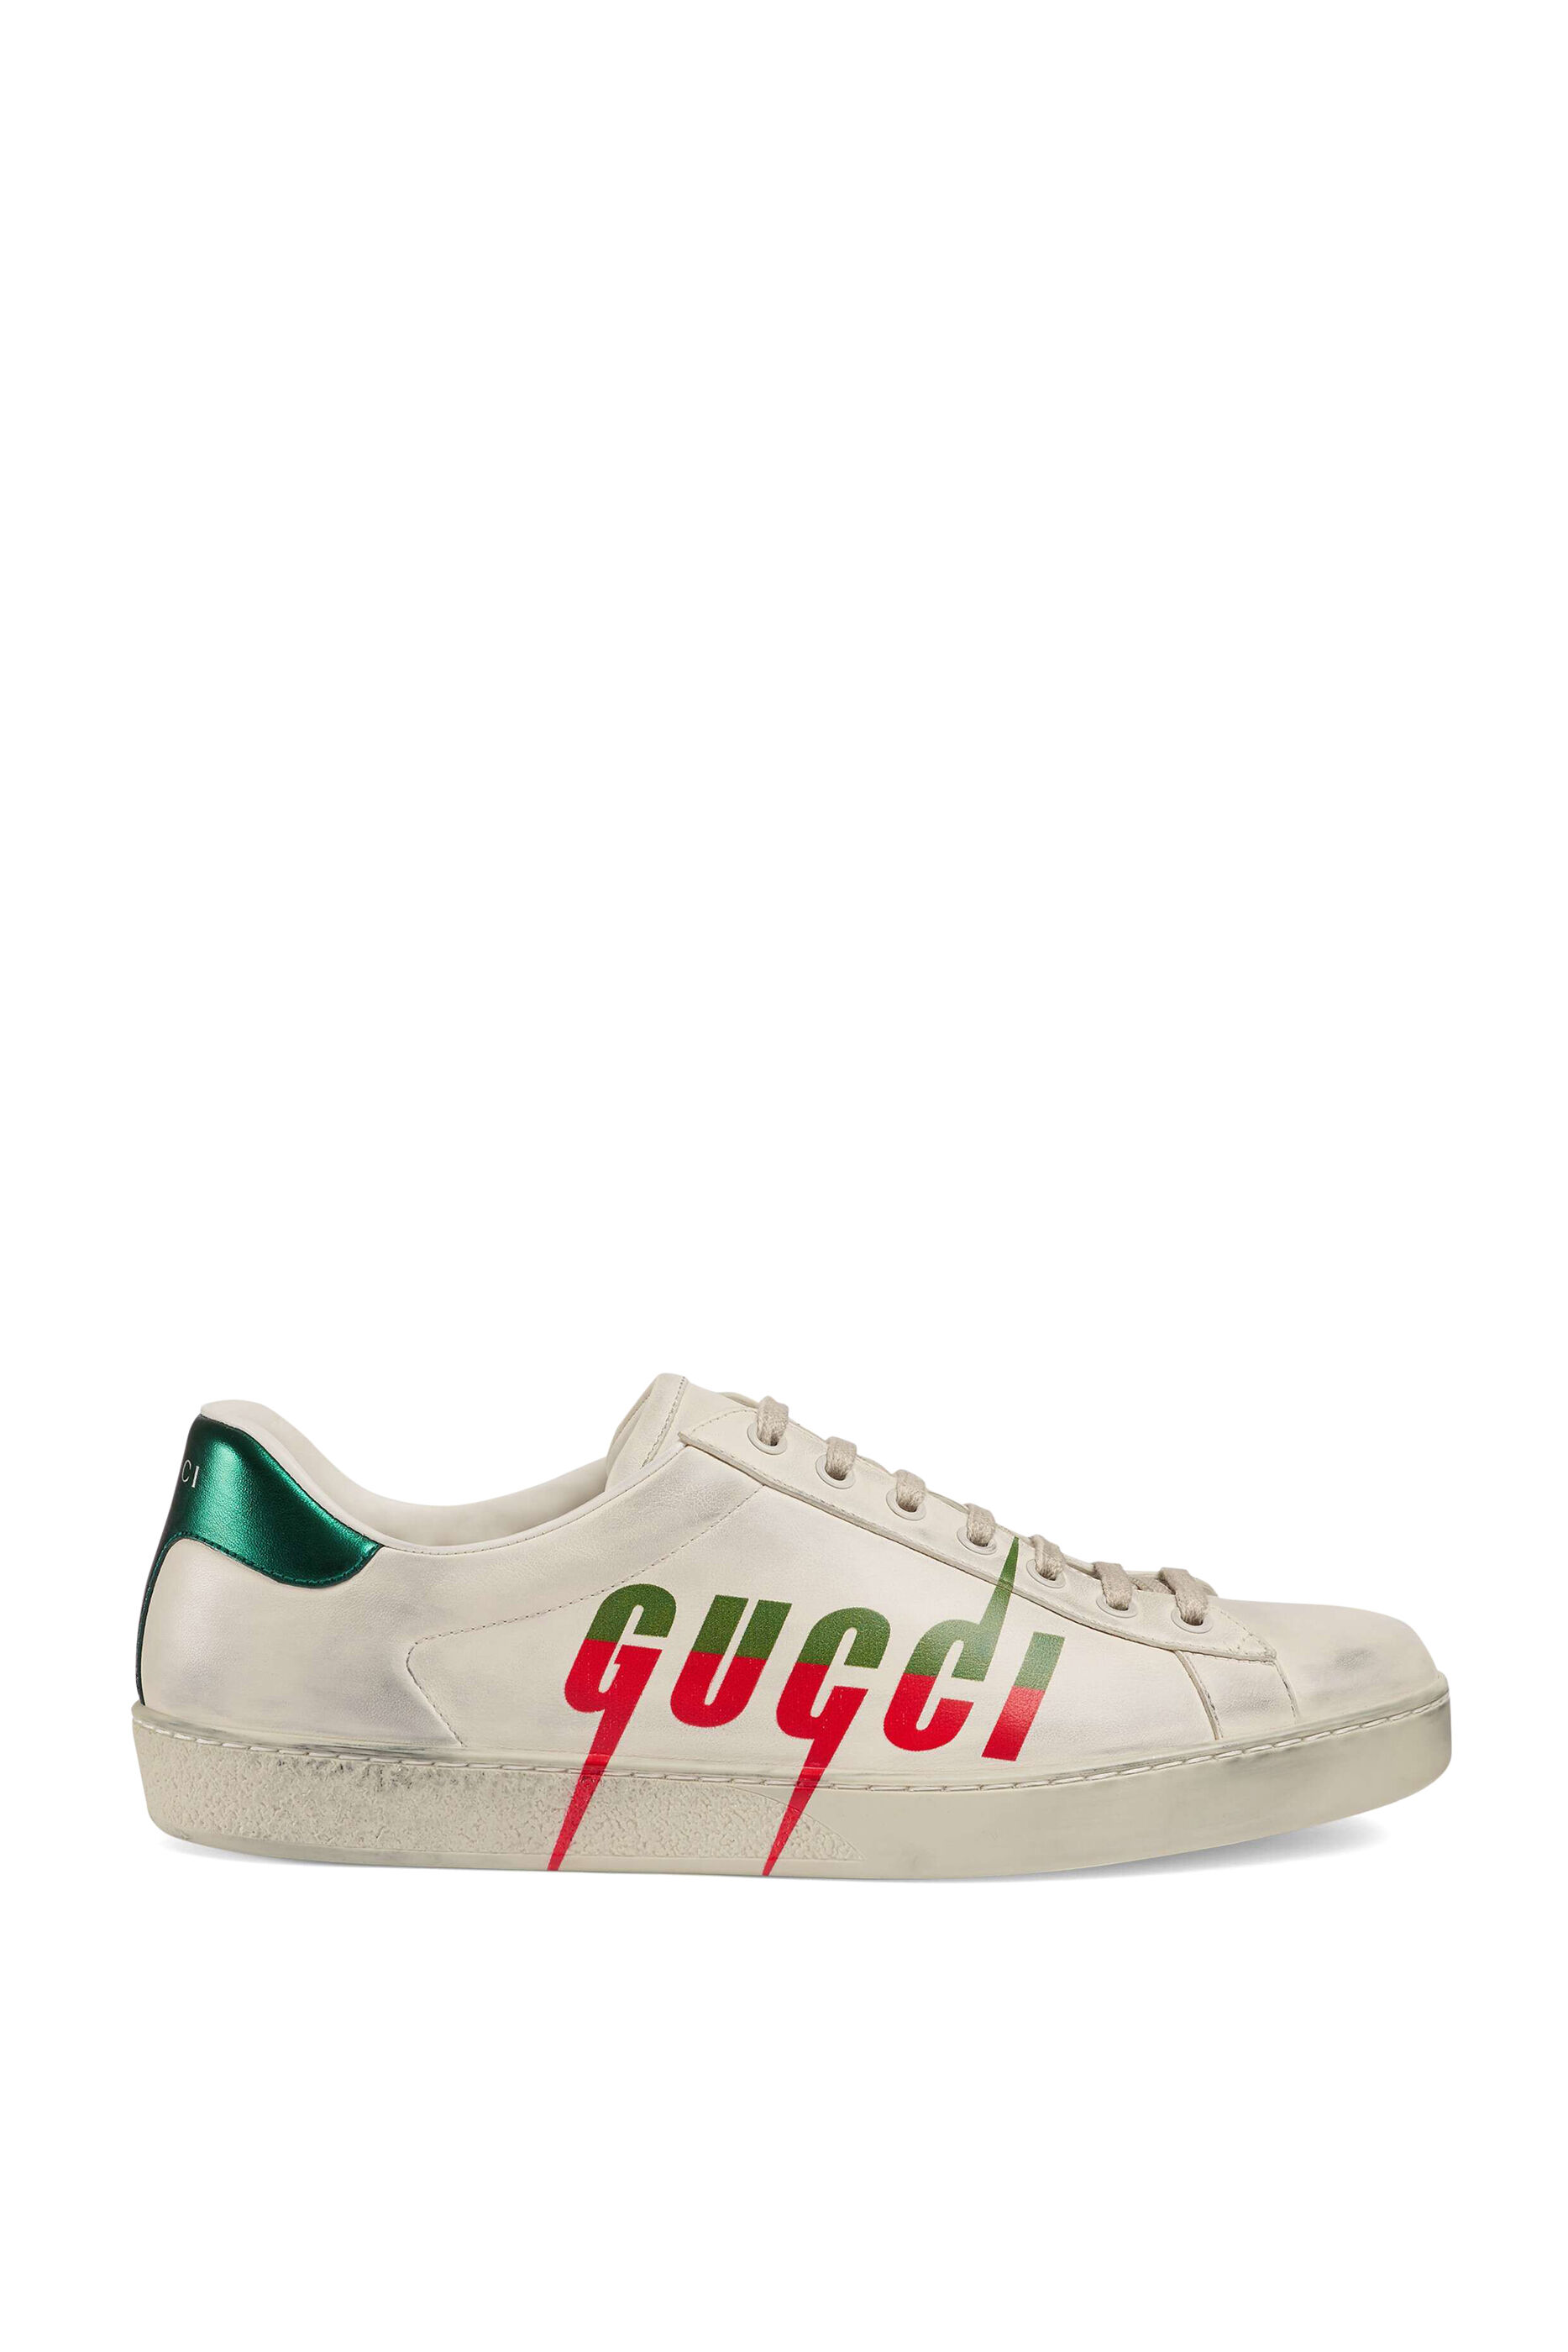 gucci sneakers bloomingdale's